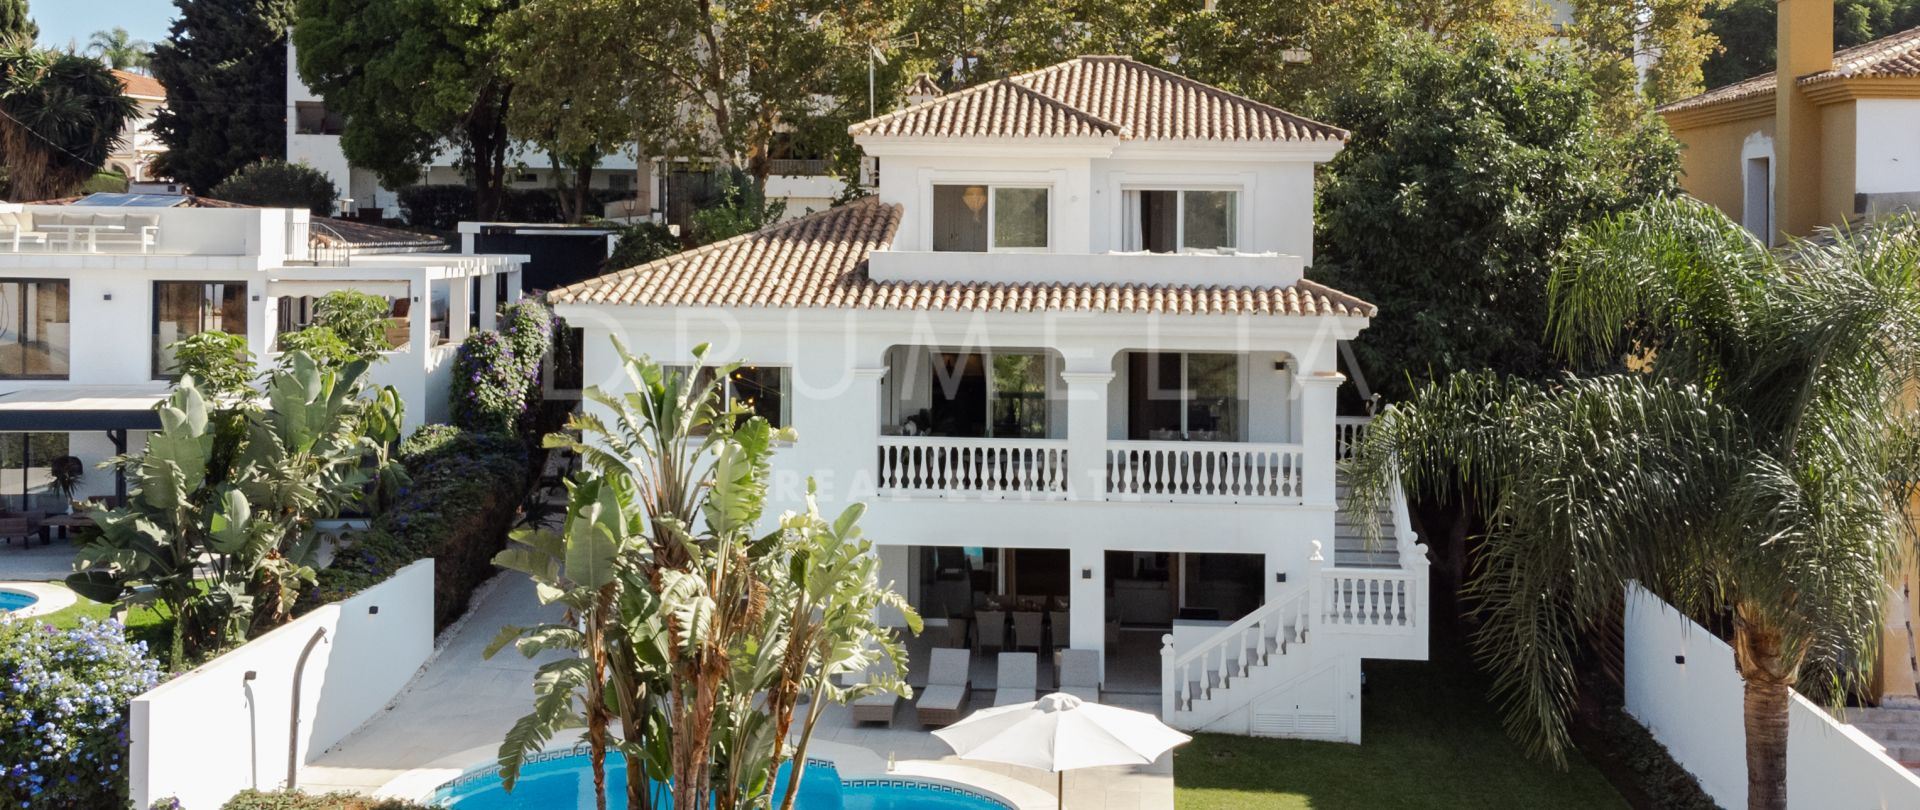 Fantastische mediterrane villa met modern Scandinavisch design te koop in Nueva Andalucia, Marbella